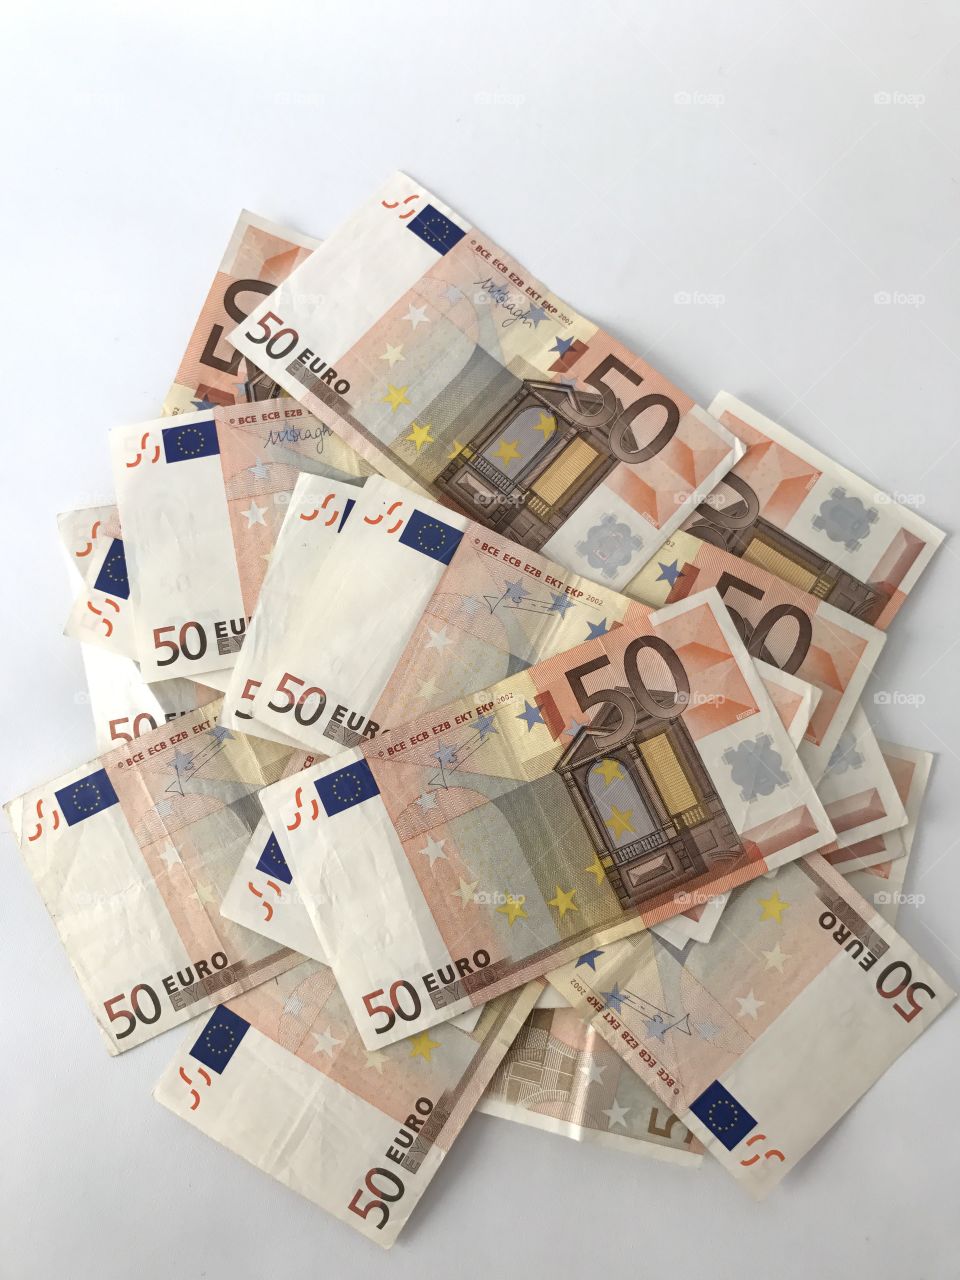 Money euro 